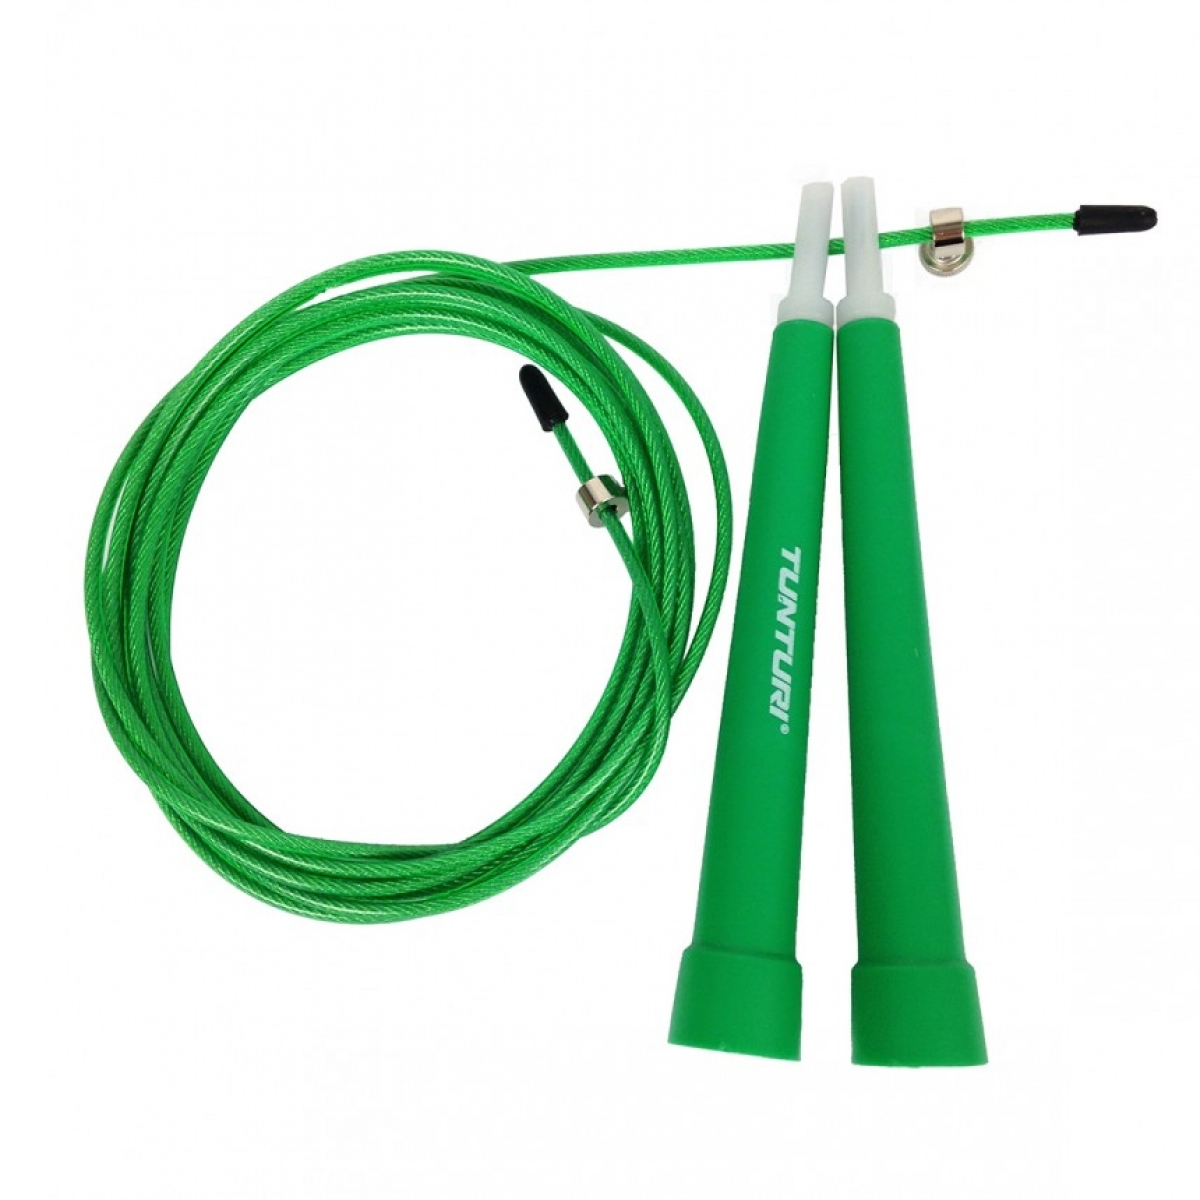 Brug Tunturi Wire Jump rope - Grøn til en forbedret oplevelse